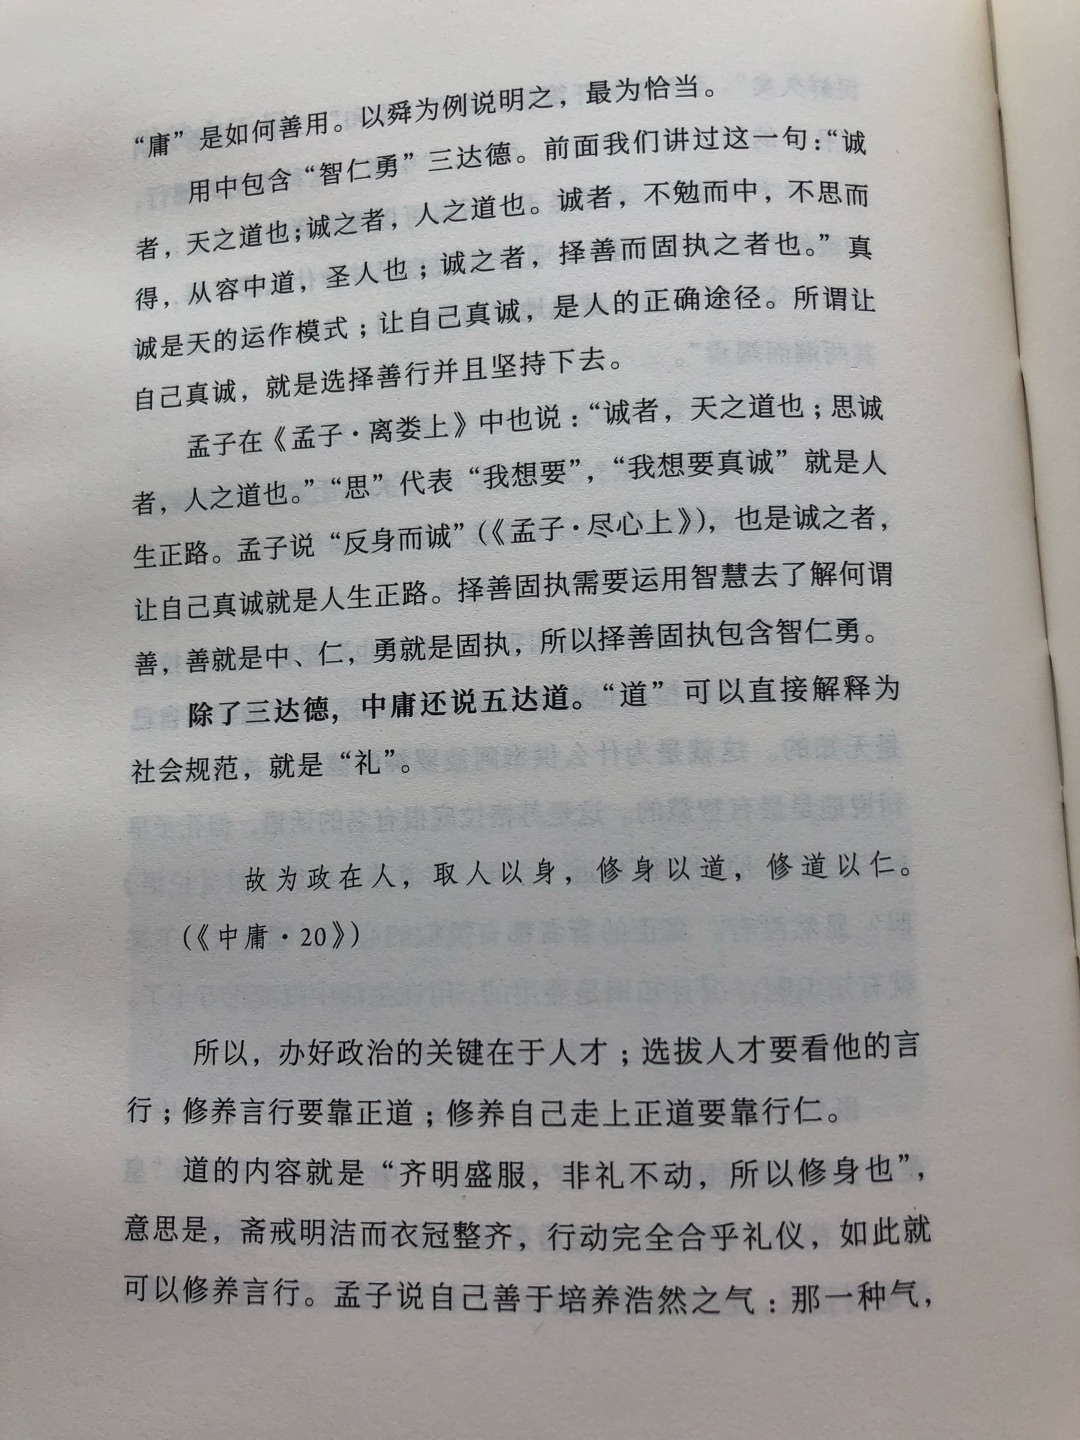 傅老师对先秦经典做了详尽的对比与注述，介绍了先秦诸儒思想的同异之处，值得一读